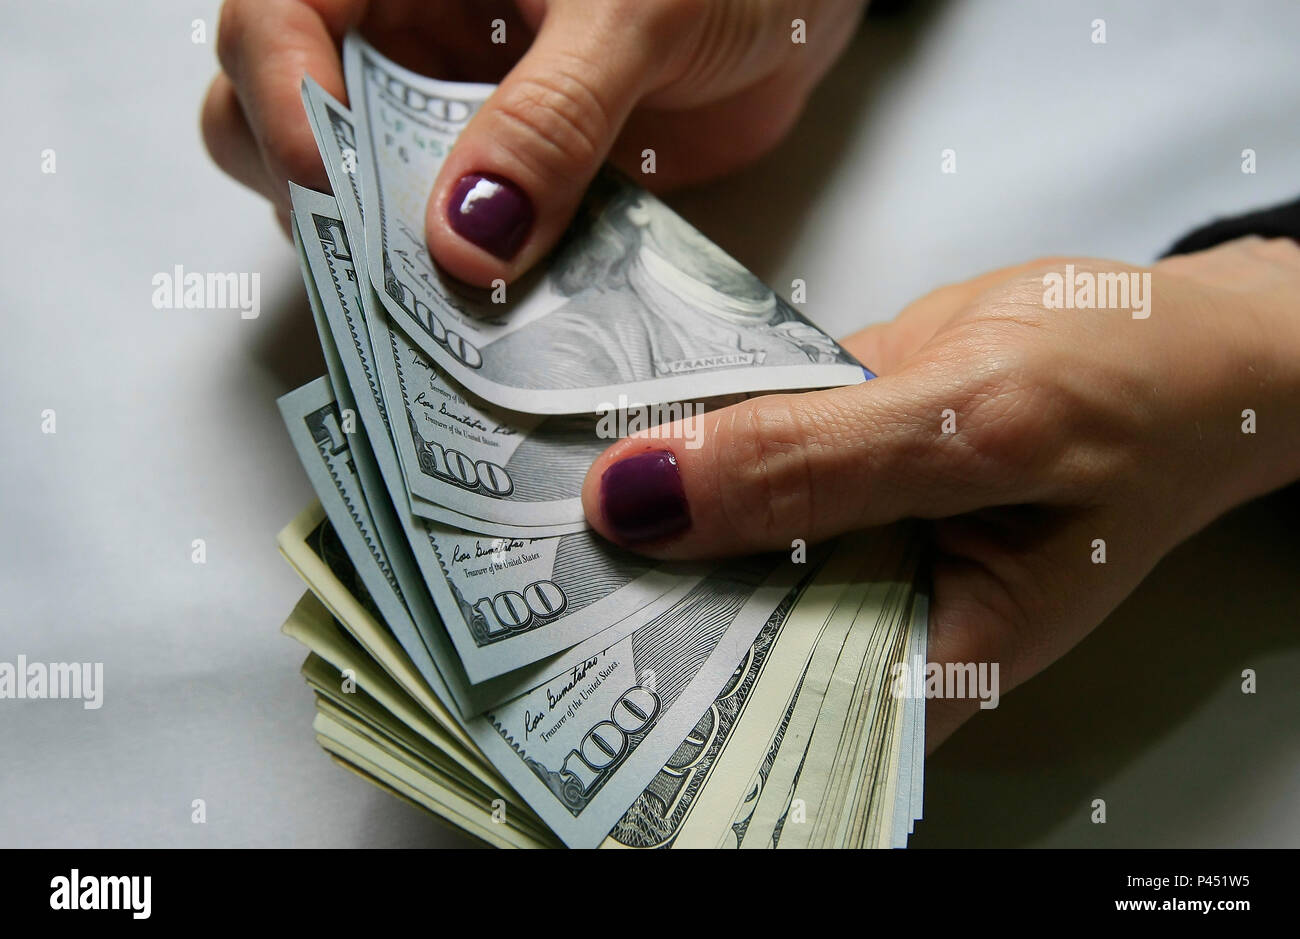 Notas de cem e vinte dolares americanos - 05/12/2013 . Foto: Carlos Eduardo Quadros / FotoArena Stock Photo